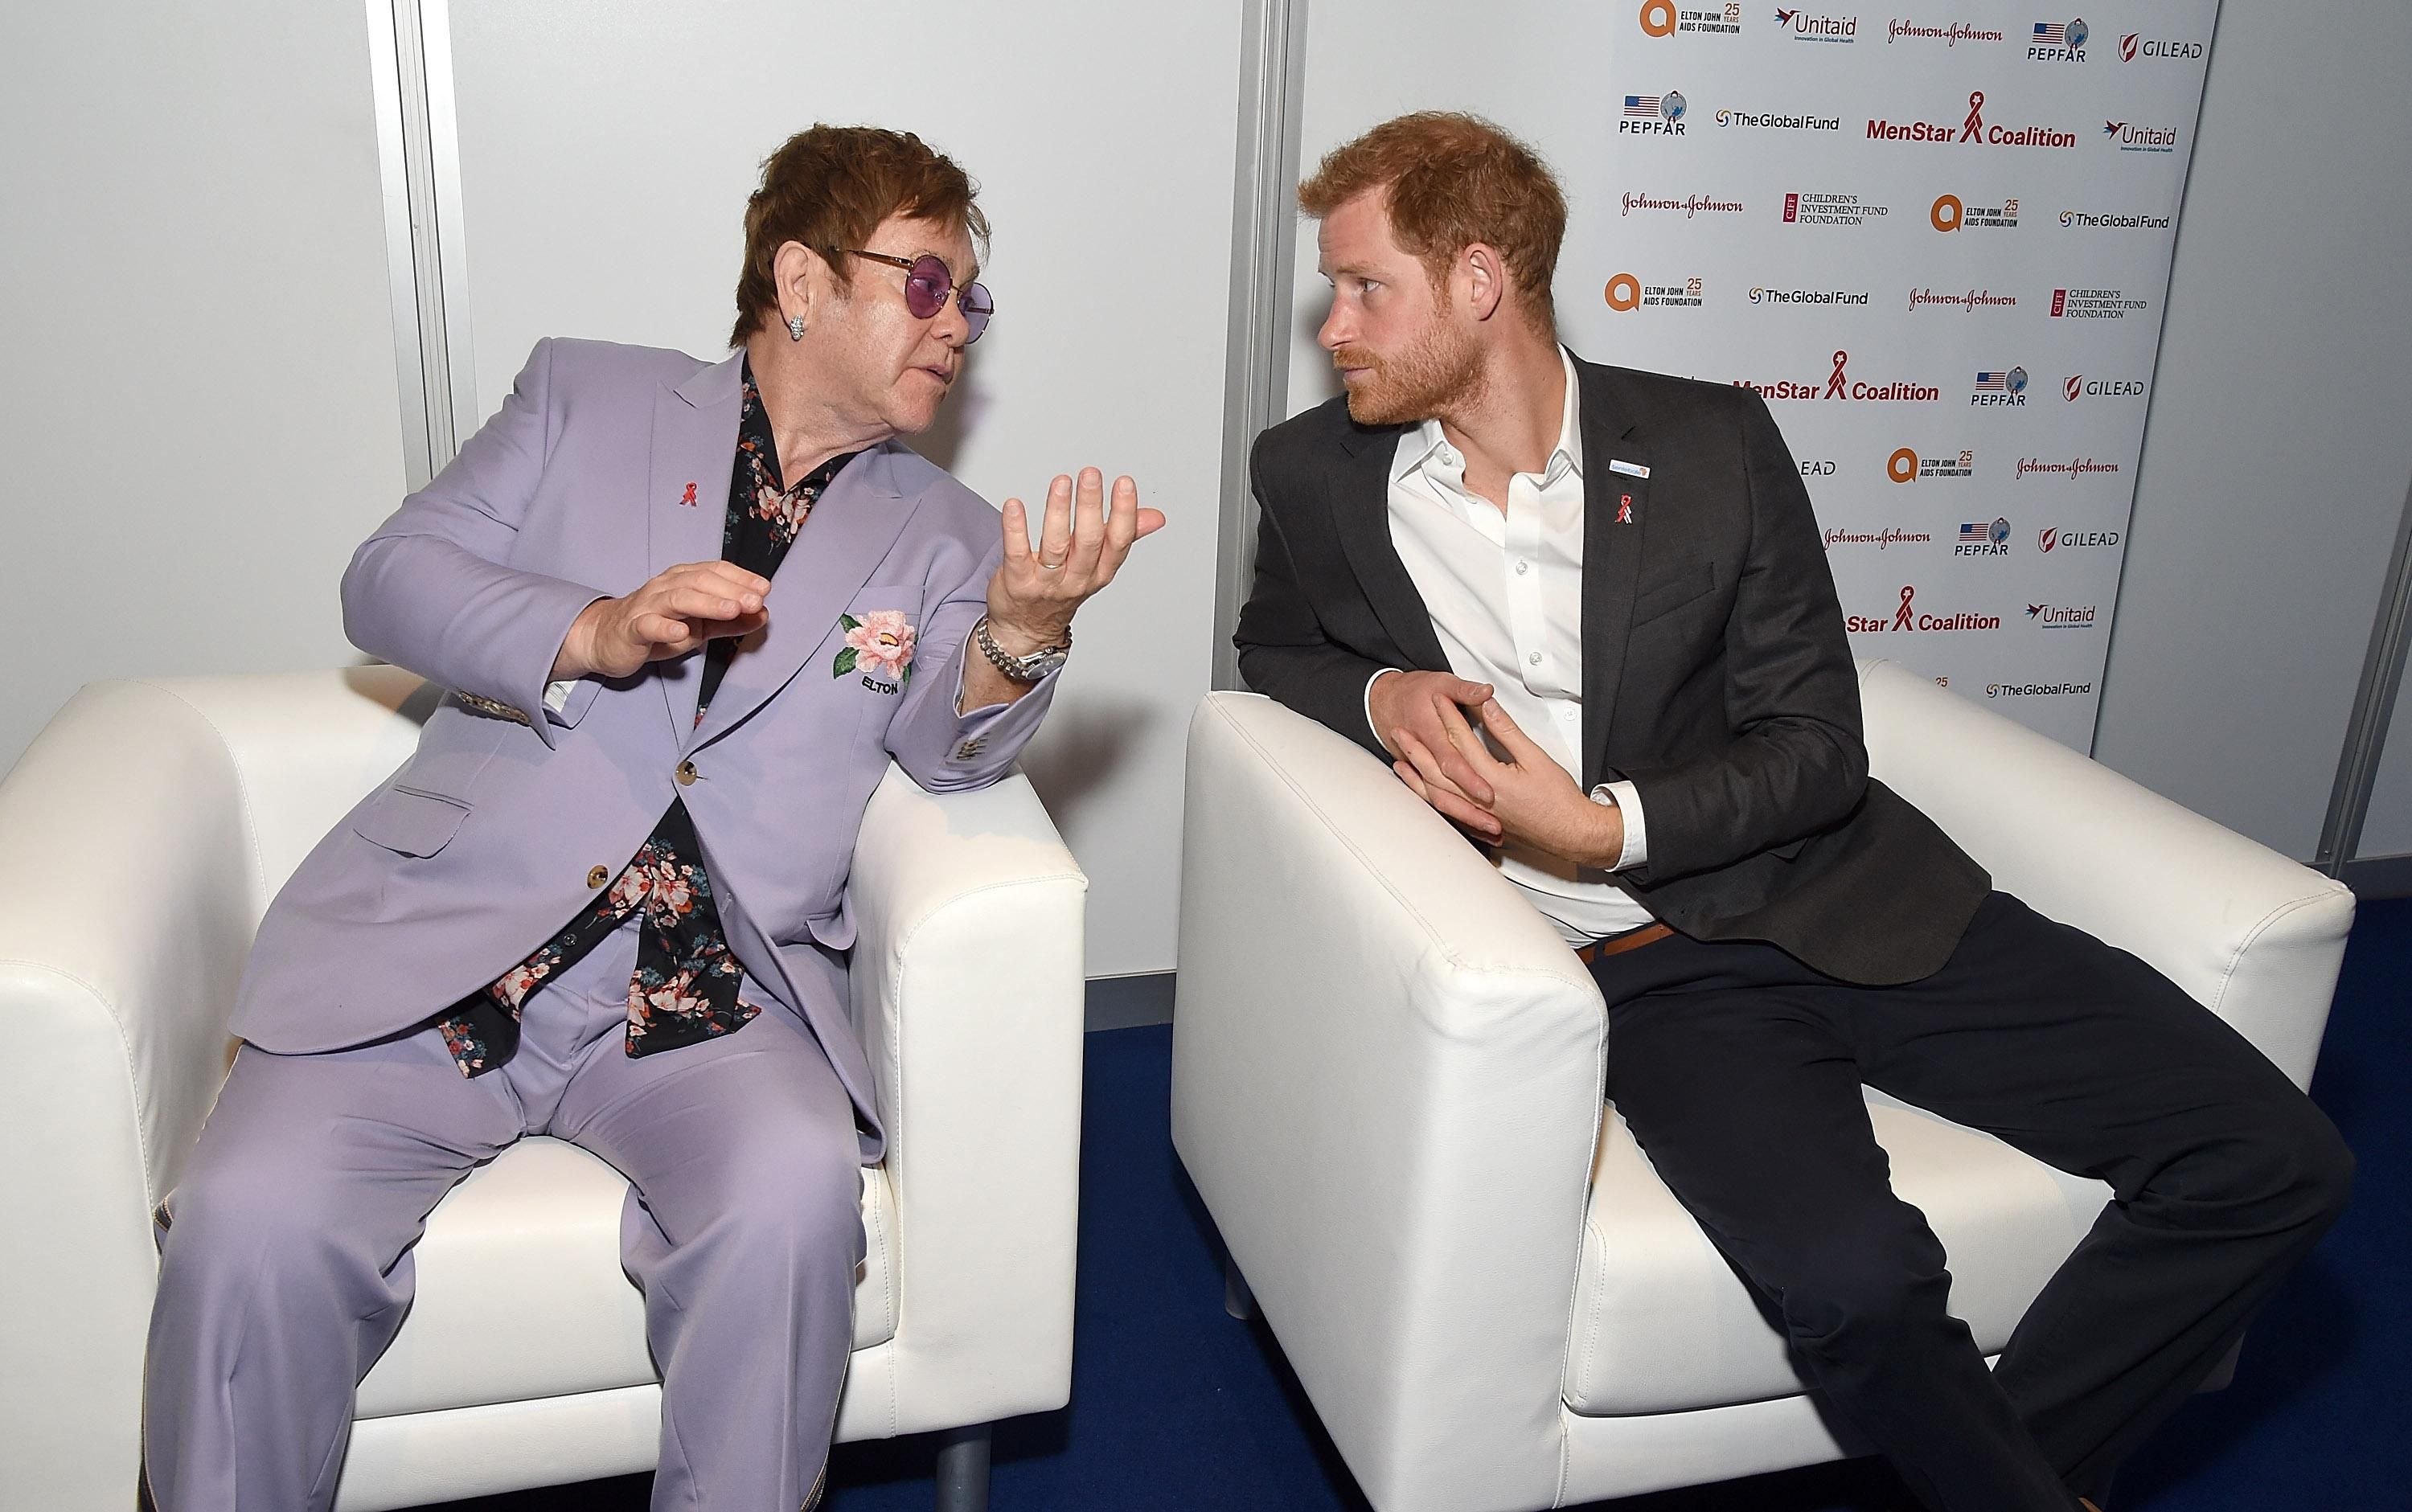 Элтон Джон и принц Гарри запускают совместную кампанию по борьбе со СПИДом